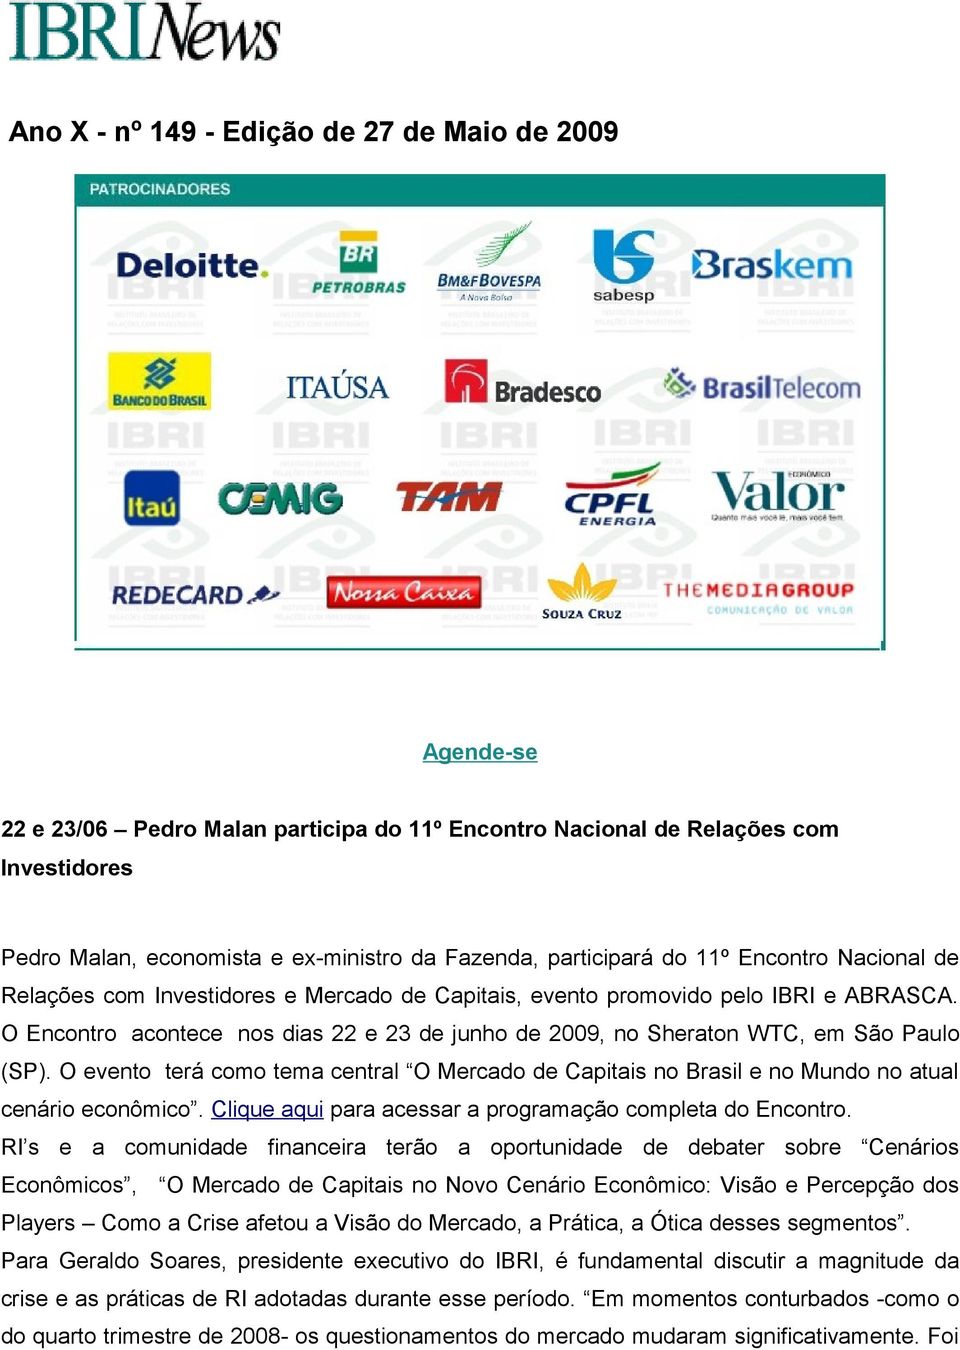 O Encontro acontece nos dias 22 e 23 de junho de 2009, no Sheraton WTC, em São Paulo (SP). O evento terá como tema central O Mercado de Capitais no Brasil e no Mundo no atual cenário econômico.